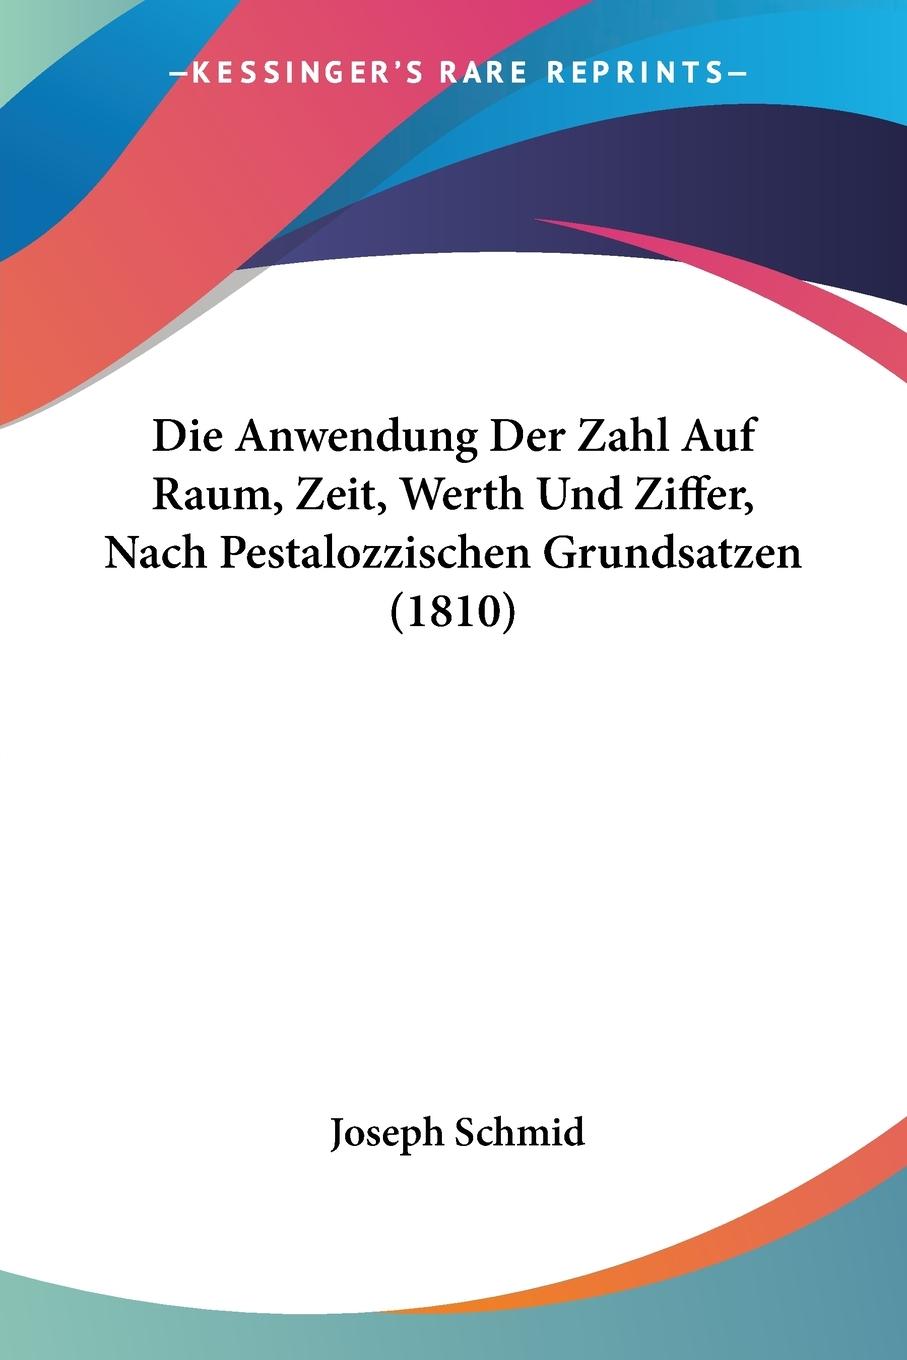 Die Anwendung Der Zahl Auf Raum, Zeit, Werth Und Ziffer, Nach Pestalozzischen Grundsatzen (1810)